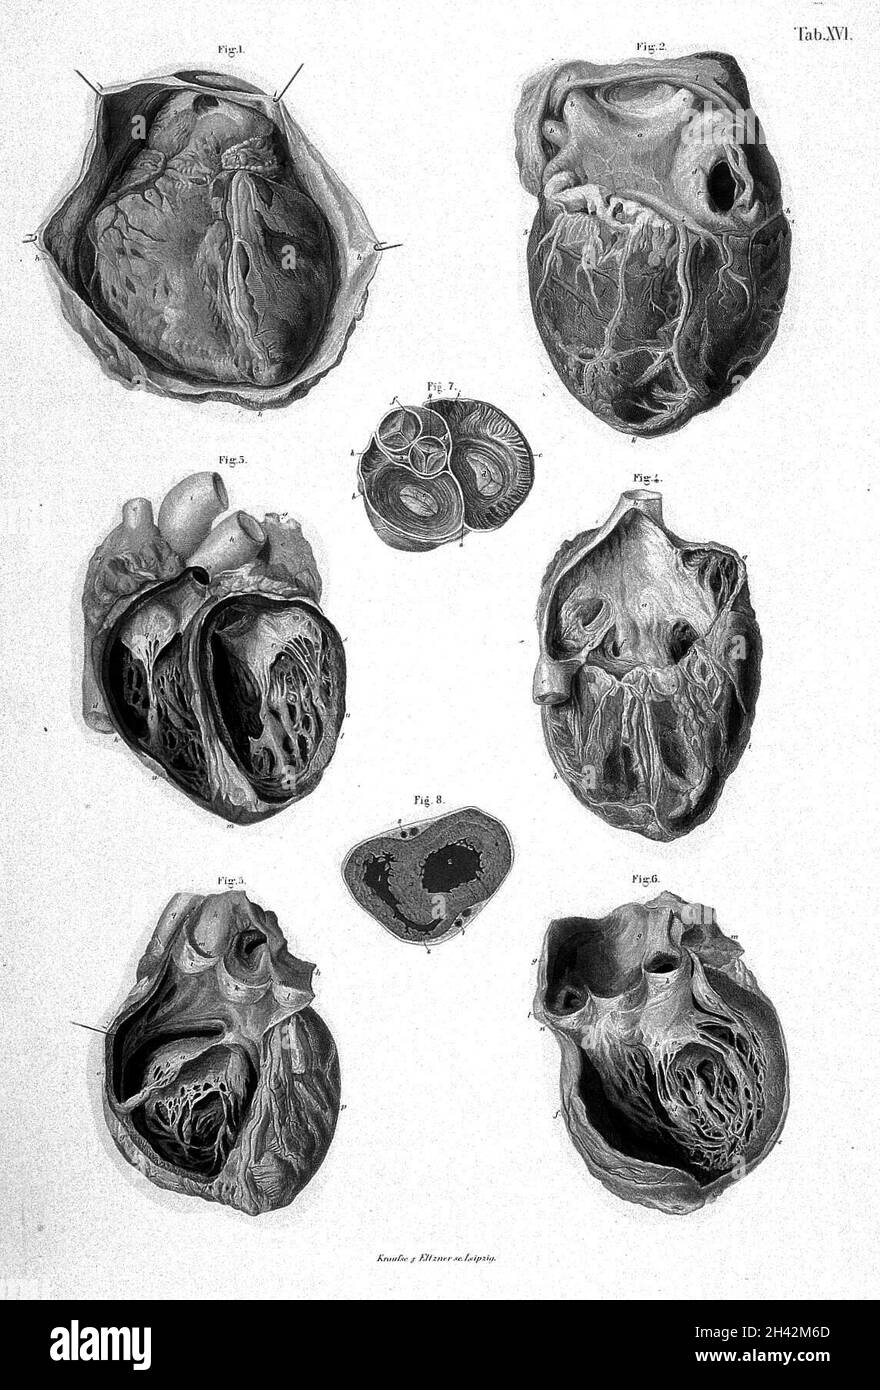 Il cuore, è cavità e valvole. Fig. 1 - superficie anteriore del cuore e copertura pericardica, Fig. 2 - superficie posteriore del cuore, delle auricole e dei Ventricales, Fig. 3 - cavità interne dei ventricoli - vista anteriore, fig. 4 - superficie anteriore del cuore - interno dell'auricola destra esposto, Fig. 5 - interno dell'auricola destra, arteria ventricolare e polmonare, Fig. 6 - esterno del ventricolo sinistro e dell'aorta, Fig. 7 - sezione trasversale di aure, aorta e arteria polmonare, immediatamente al di sopra delle origini di questi vasi, che mostra le valvole auriculicricolari e arteriose in azione, Fig. 8 Foto Stock